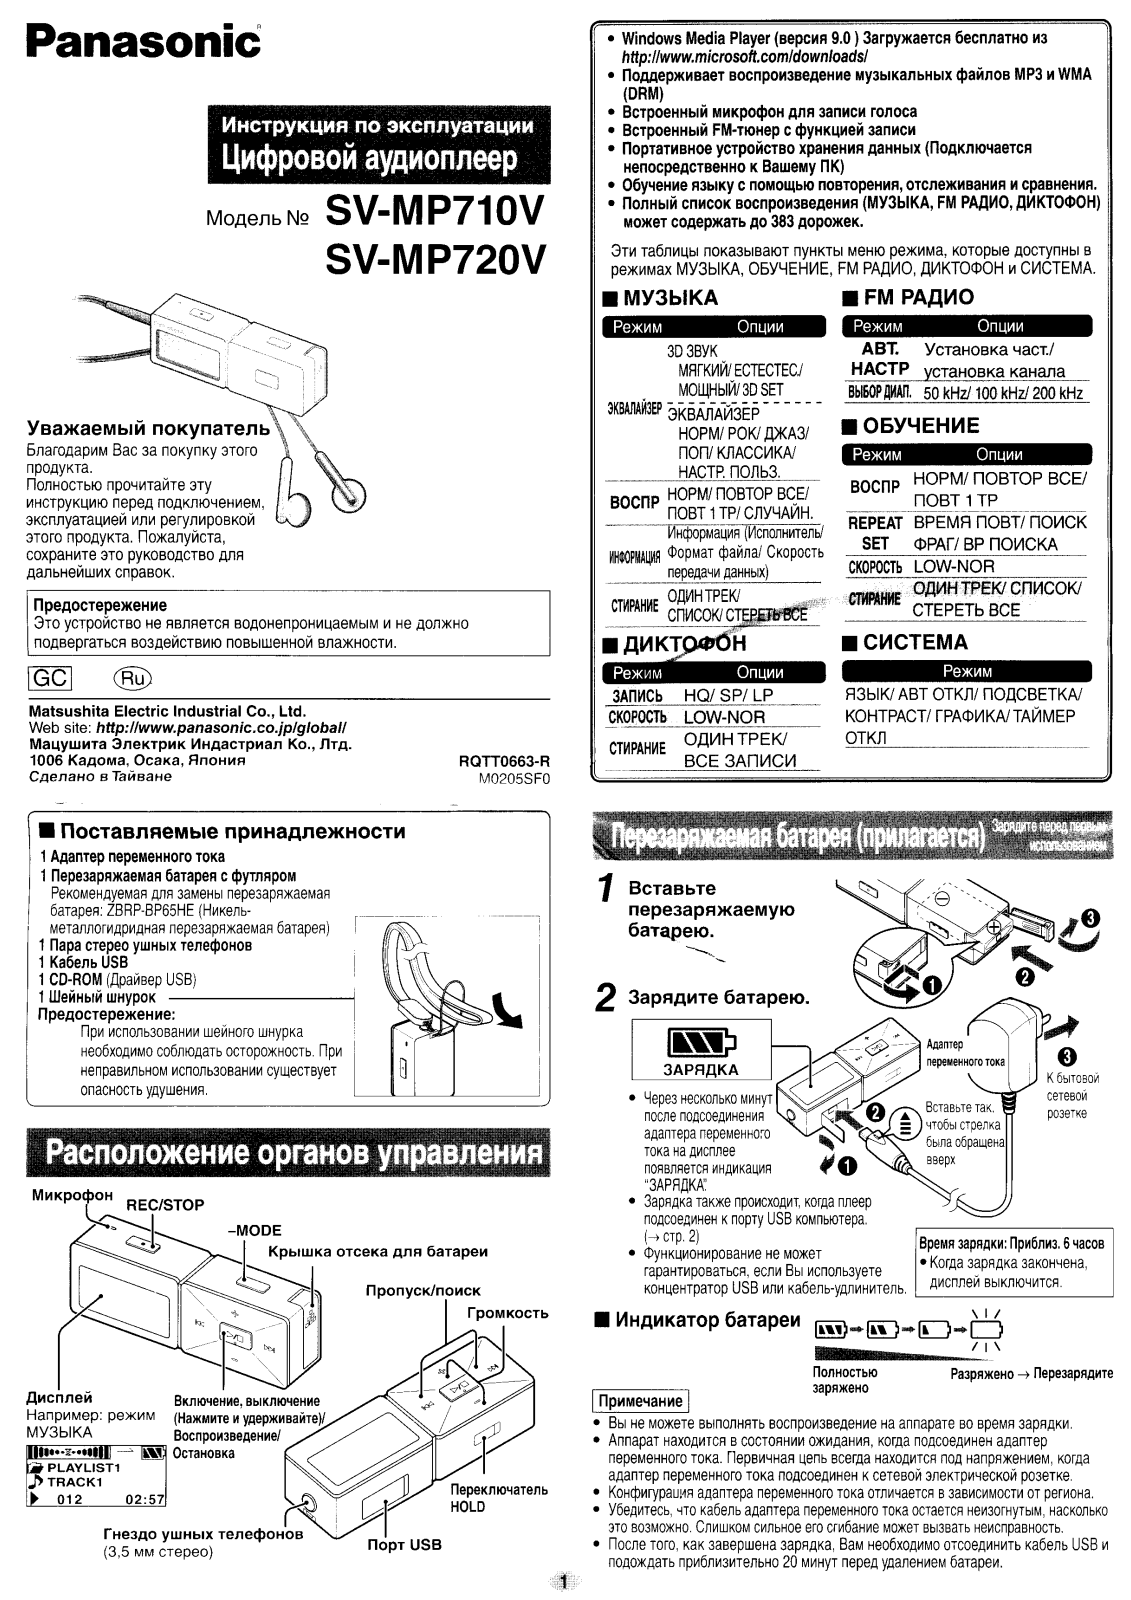 Panasonic SV-MP710V, SV-MP720V User Manual